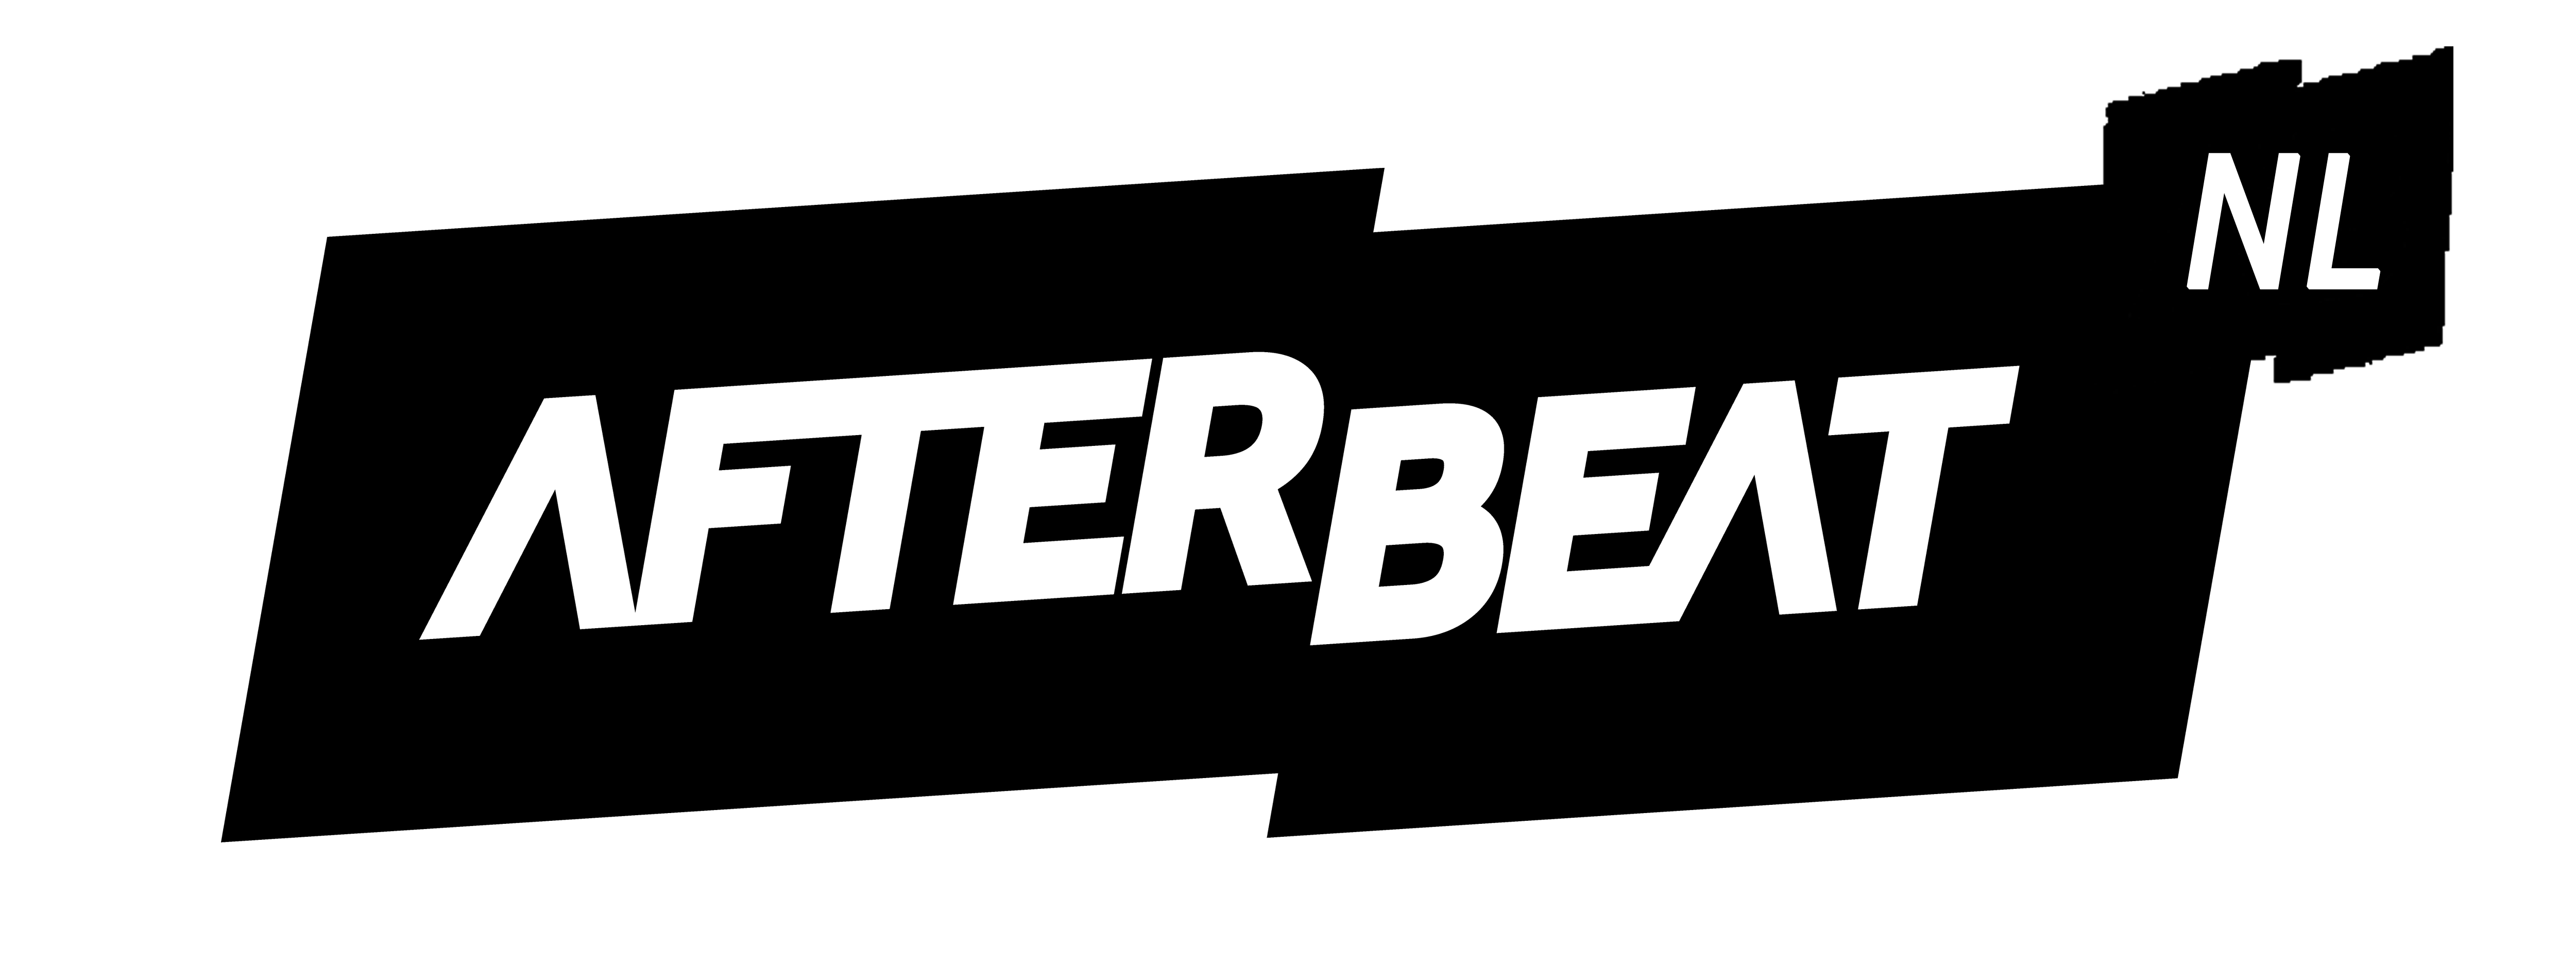 Afterbeat NL Logo 2020